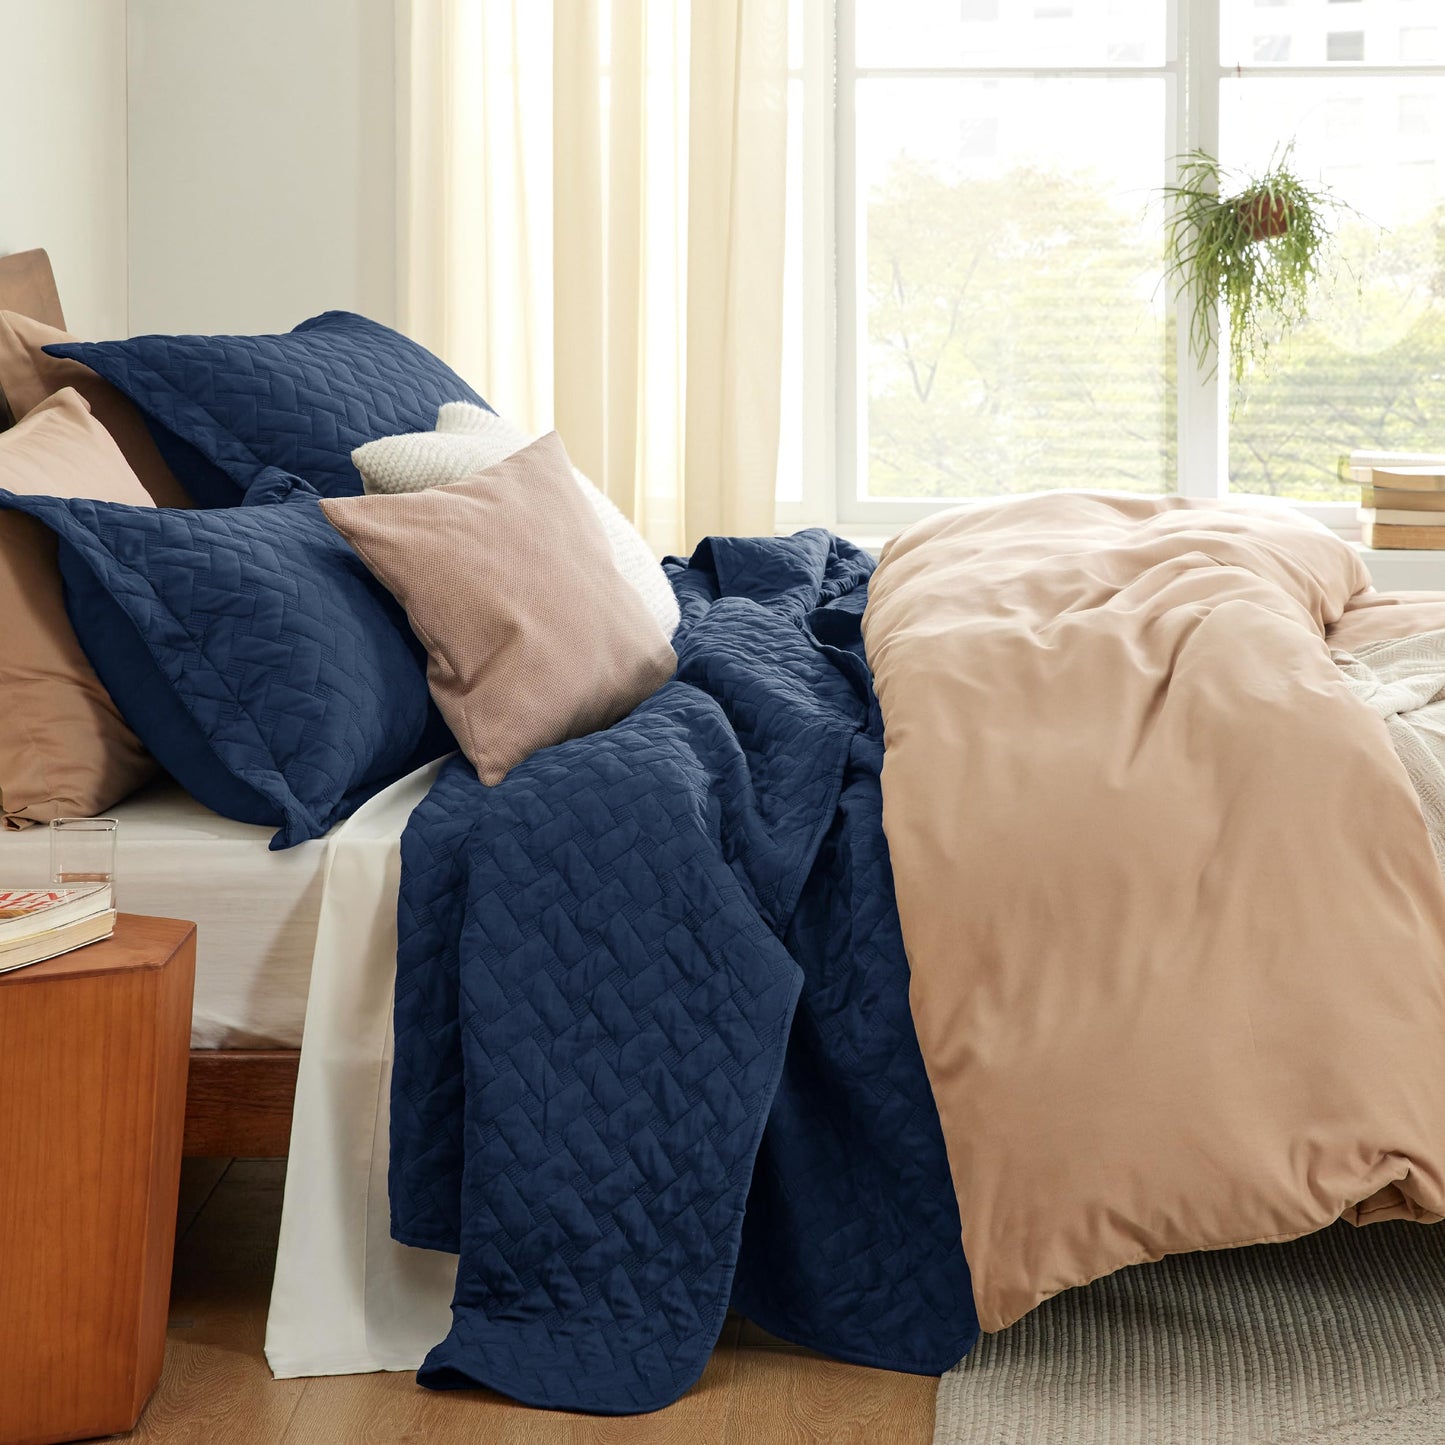 Bedsure Queen Quilt Bedding Set - Lightweight Summer Quilt Full/Queen - Navy Bedspreads Queen Size - Bedding Coverlets for All Seasons (Includes 1 Quilt, 2 Pillow Shams)